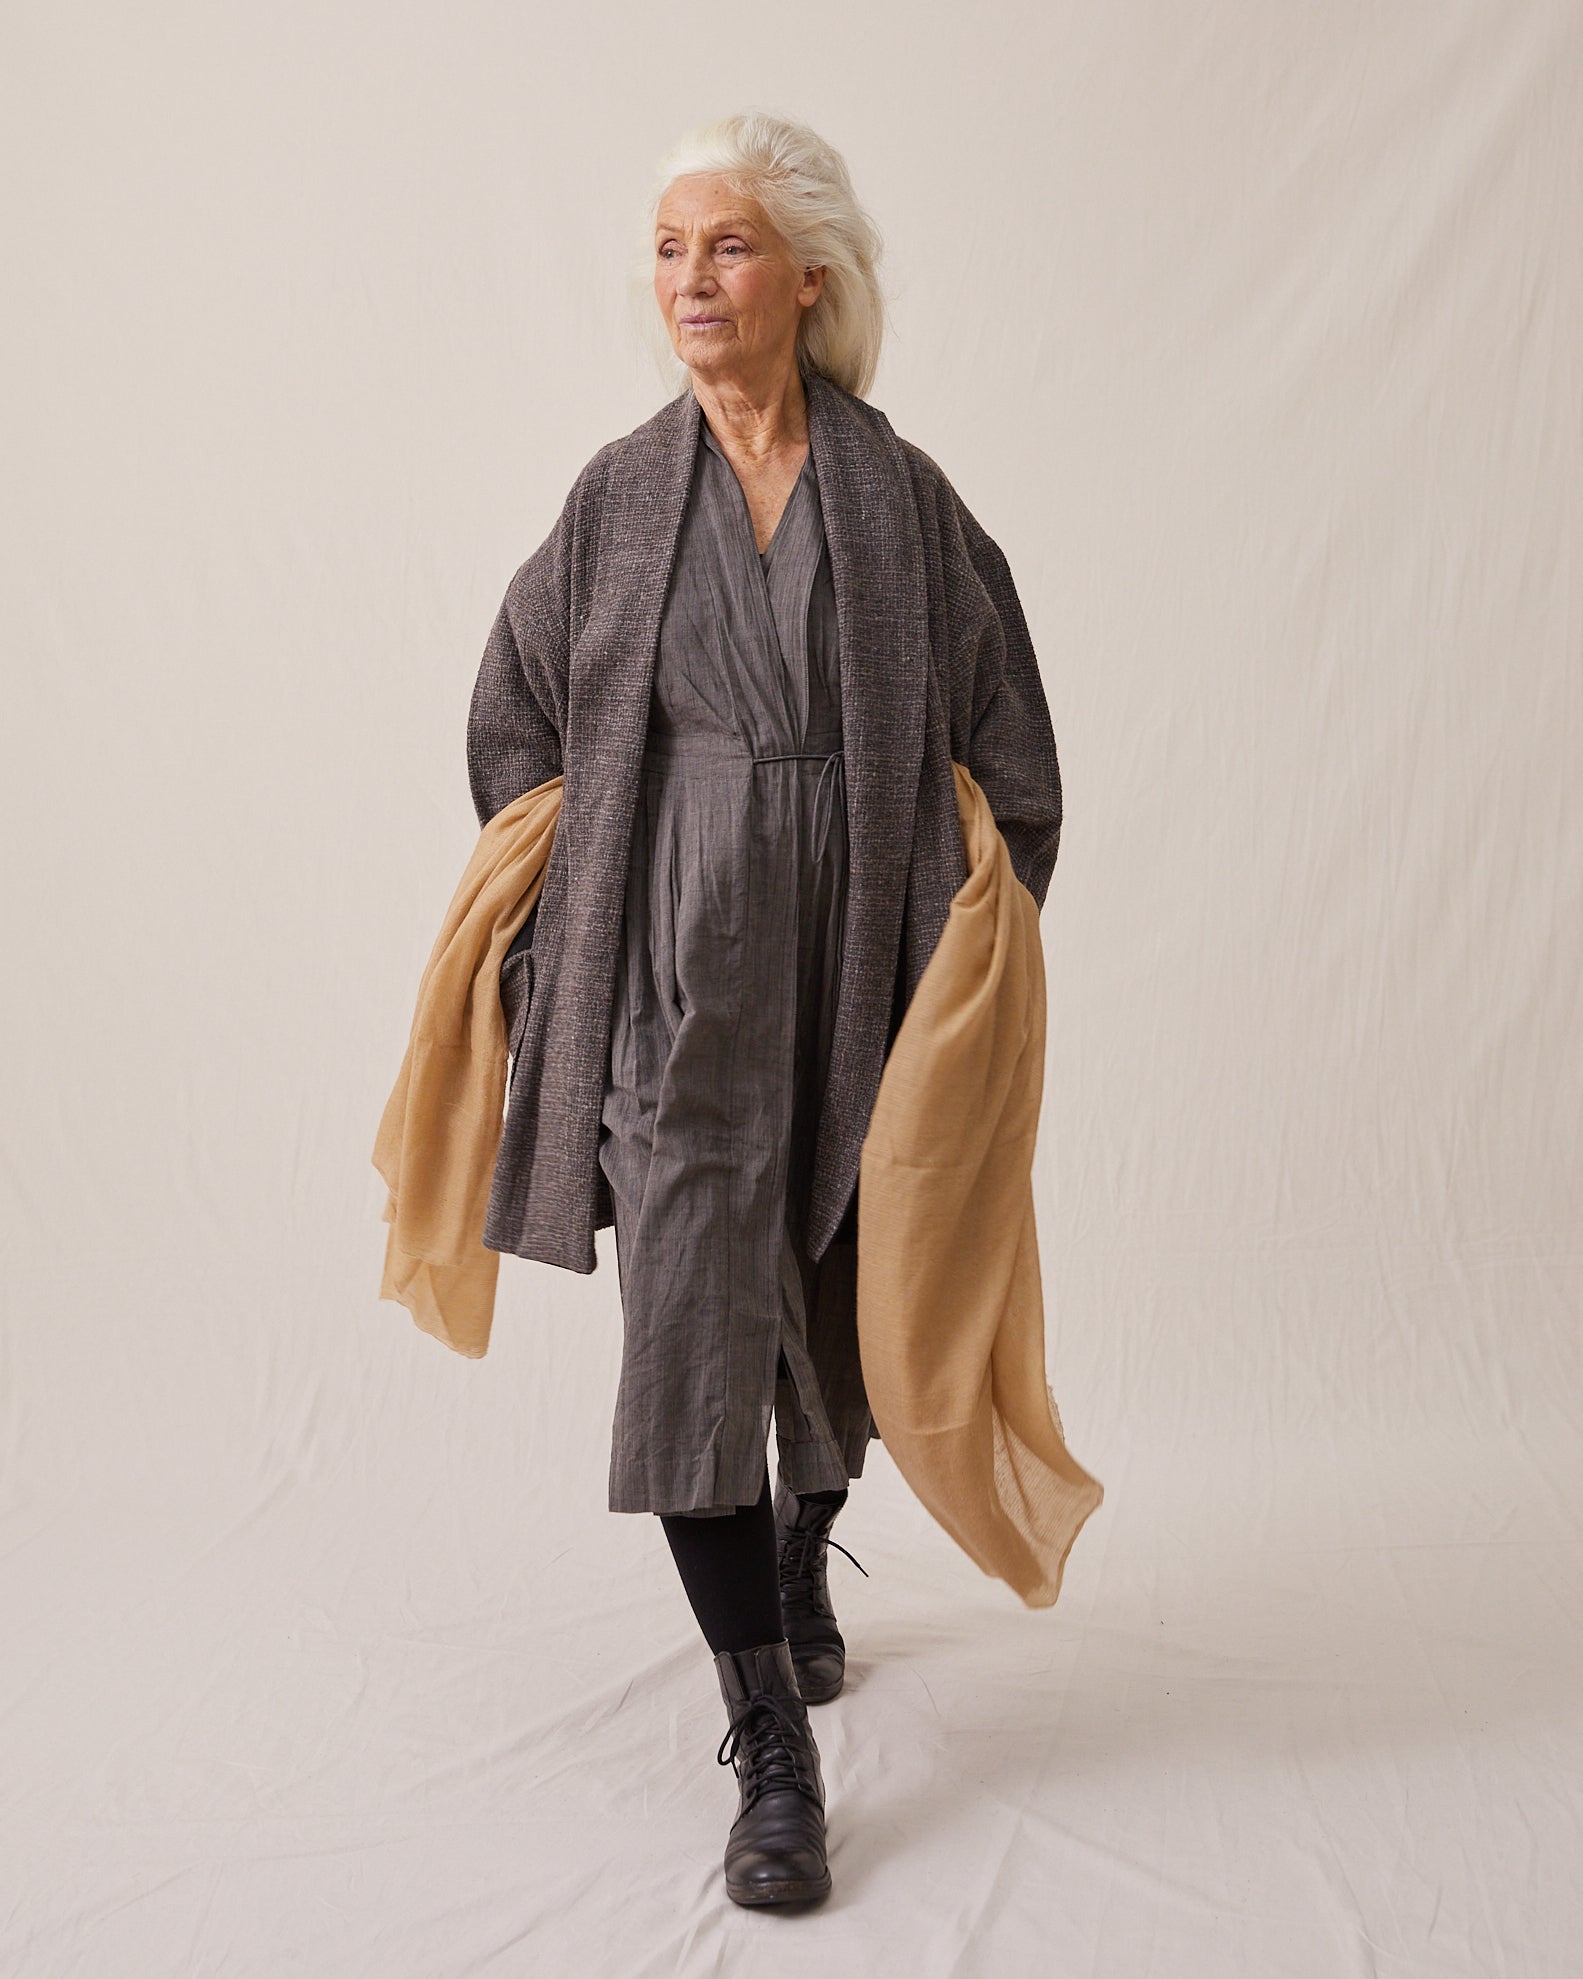 Klänning CALLAS design Bess Nielsen, handgjord i ull från Andhra Pradesh